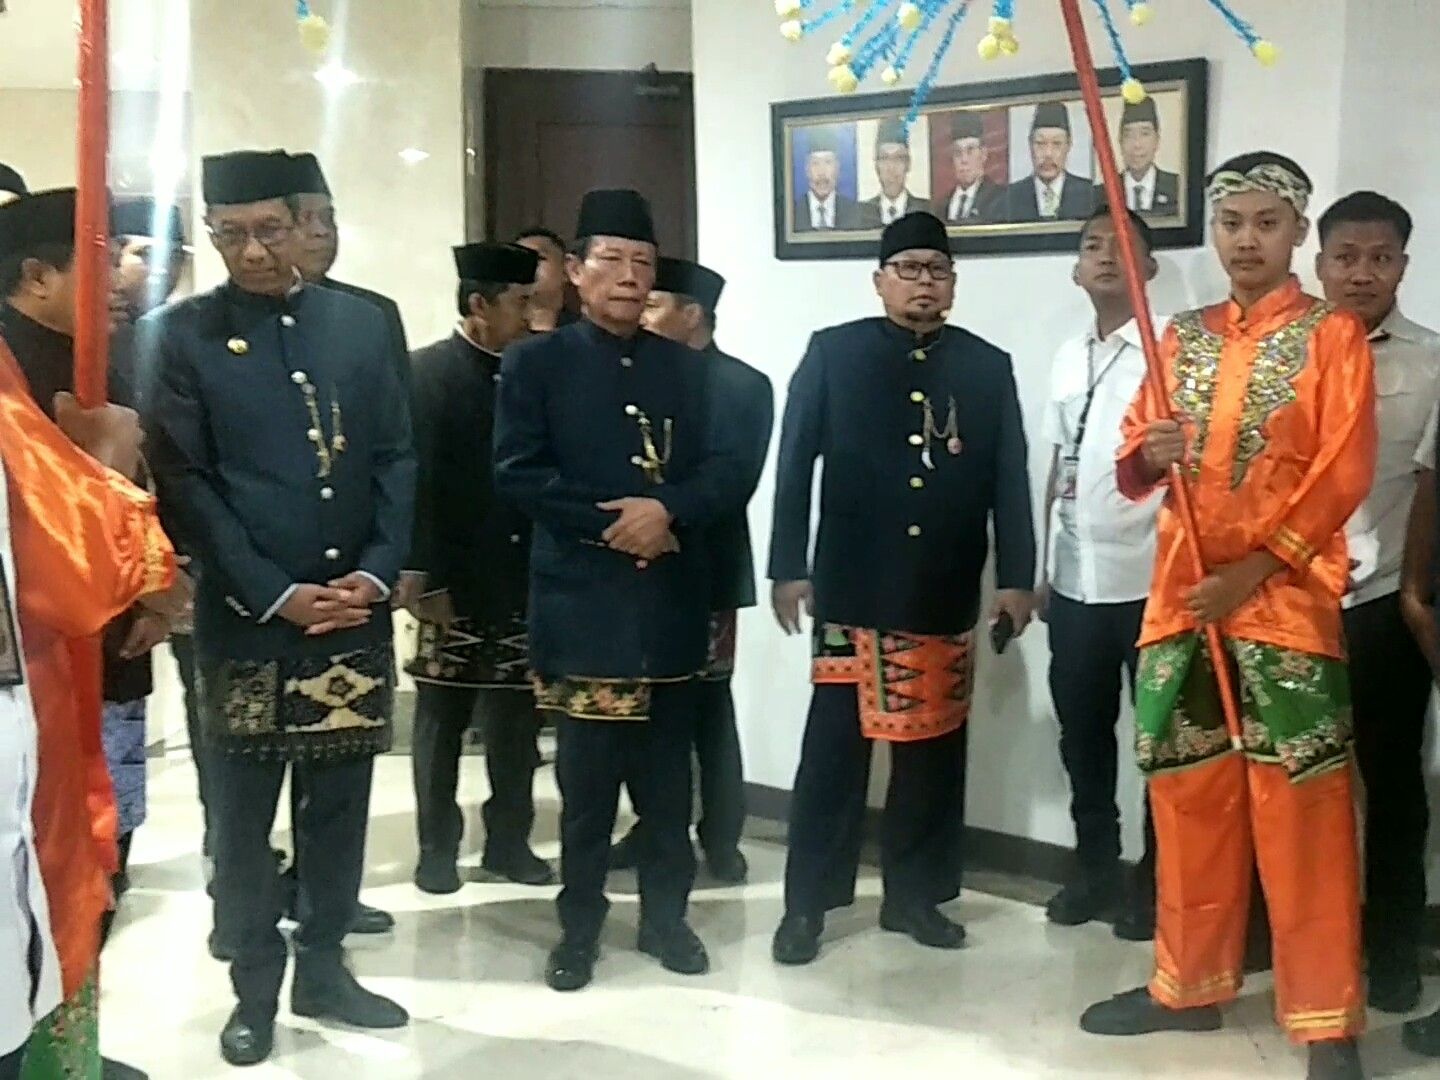 Mantan Gubernur Sutiyoso Kembali ke Balai Kota, Ikut Rapat Paripurna HUT Ke-496 Jakarta